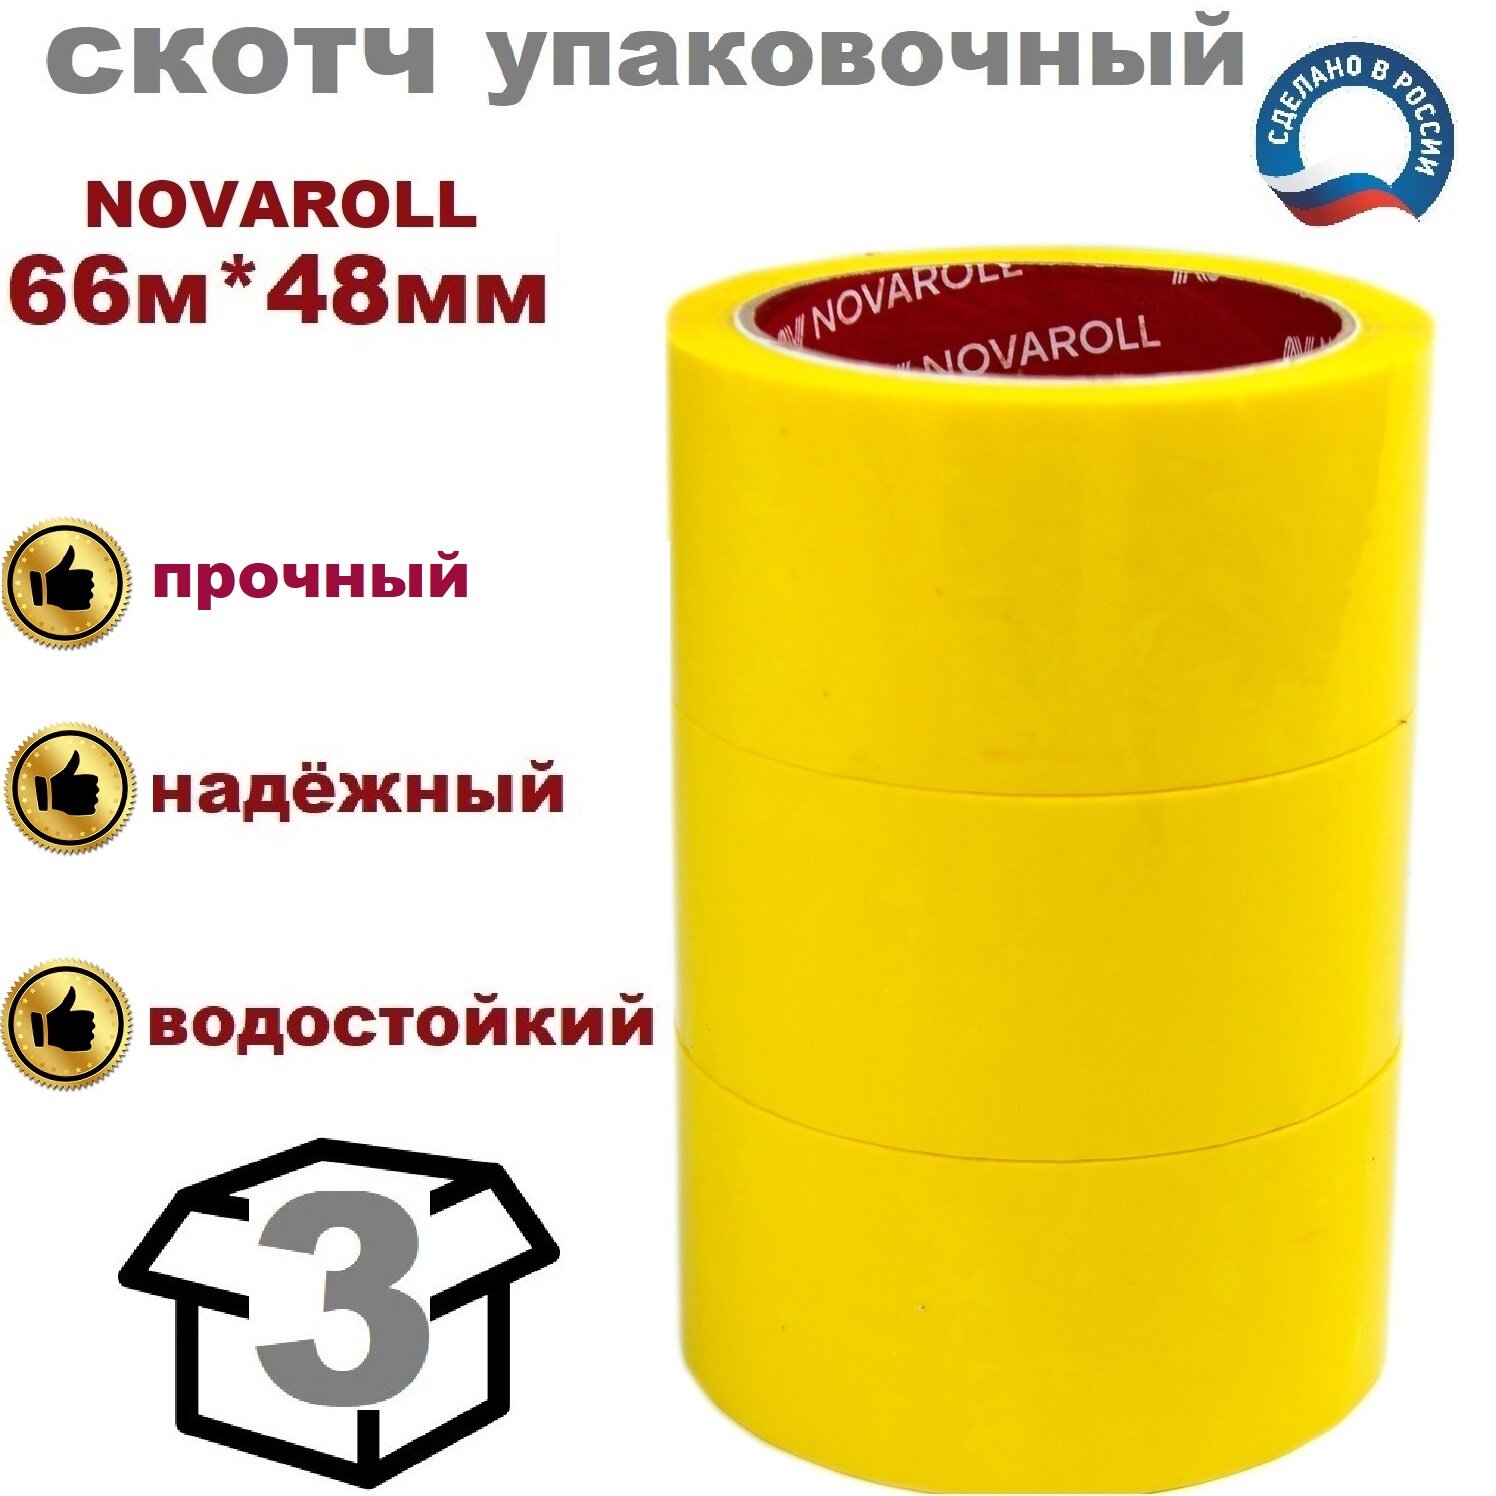 Novaroll 48мм*66 м 3 шт. в наборе клейкая лента канцелярская широкая липкая желтая / скотч цветной желтый